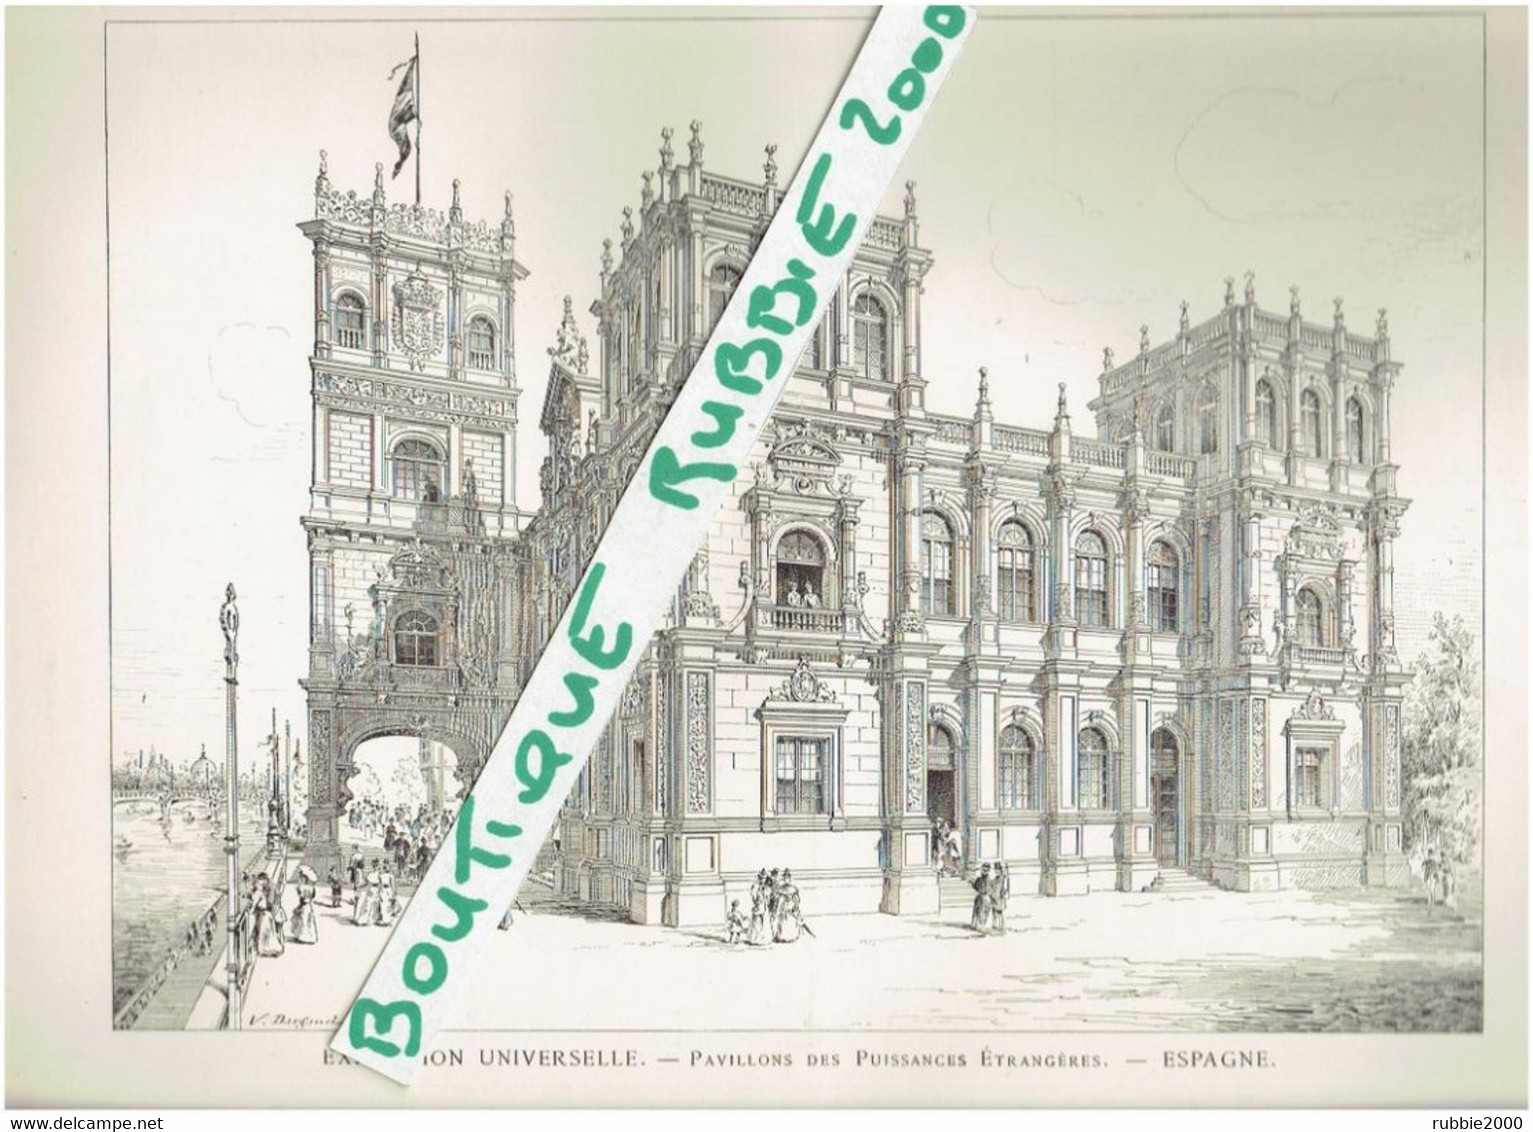 EXPOSITION UNIVERSELLE DE PARIS 1899 ESPAGNE DESSIN PAVILLON DES PUISSANCES ETRANGERES - Paris